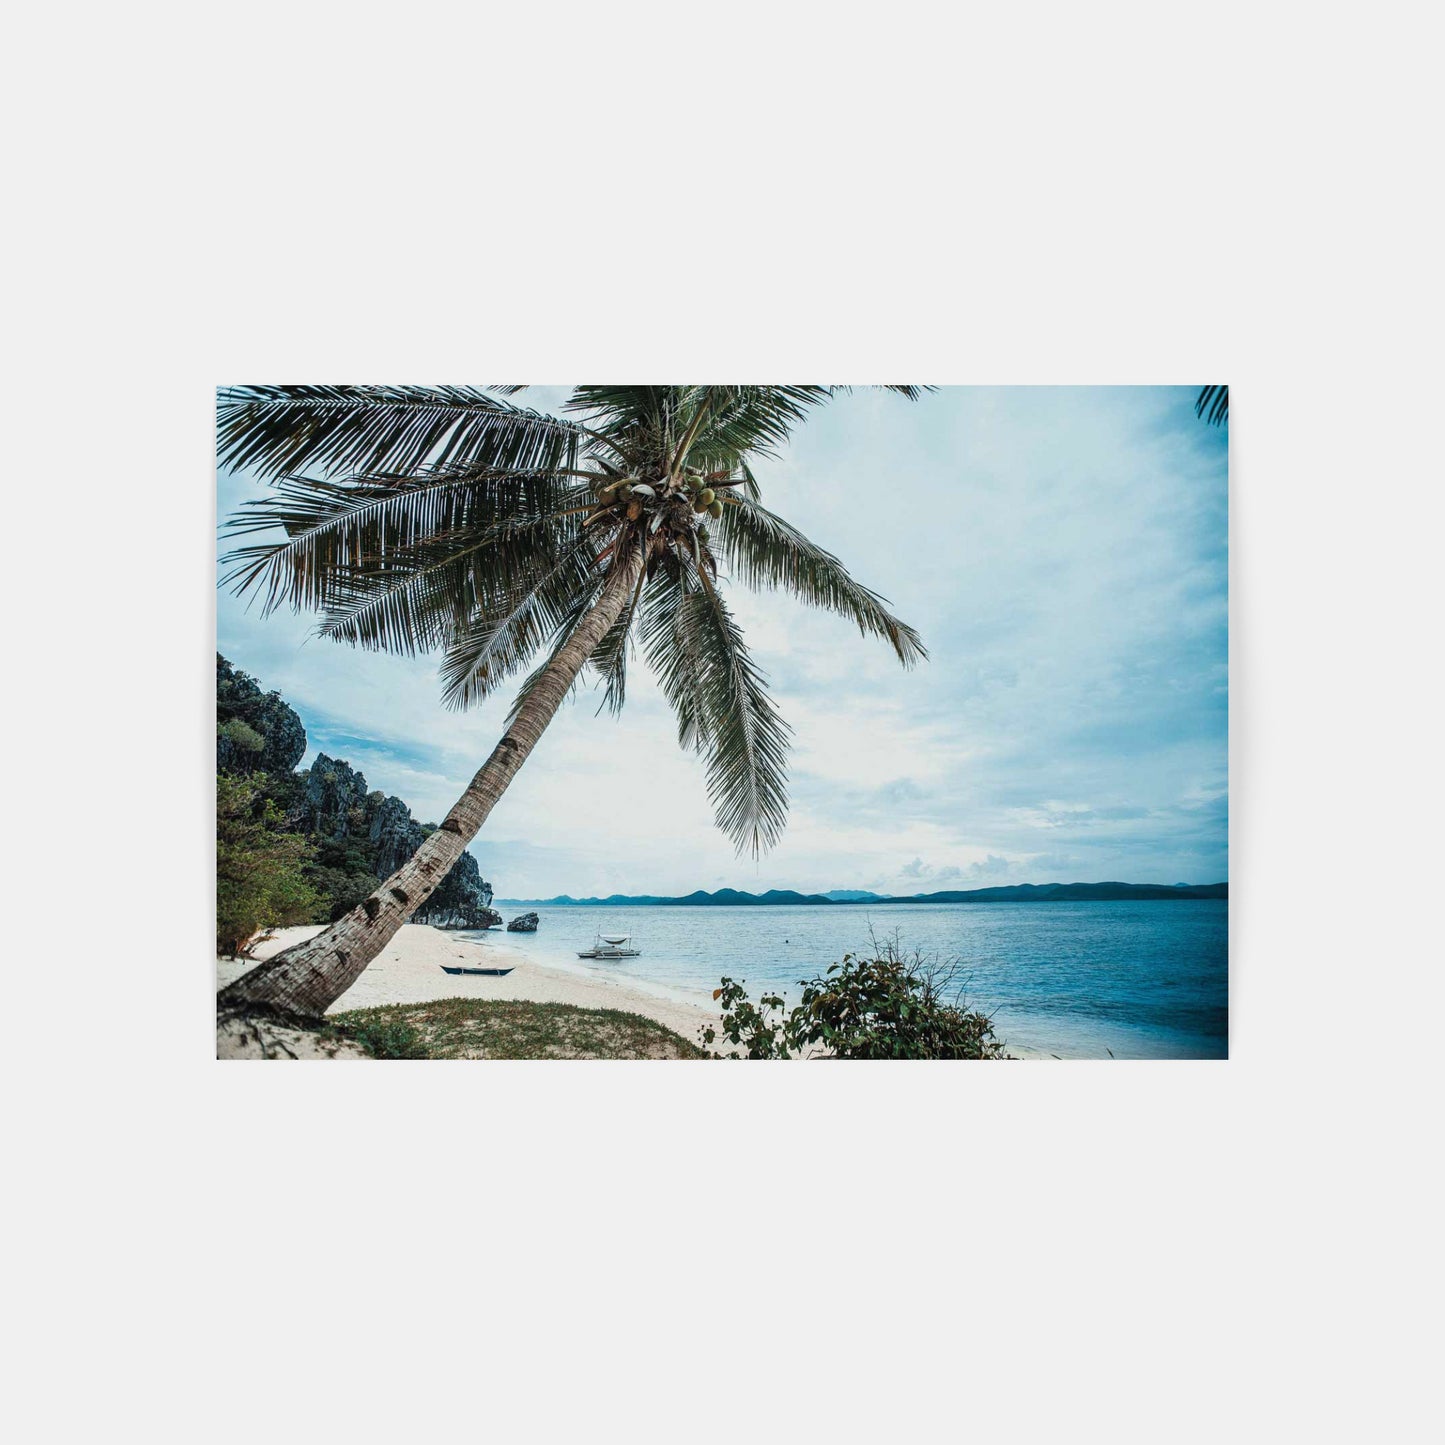 Černý ostrov – Filipíny